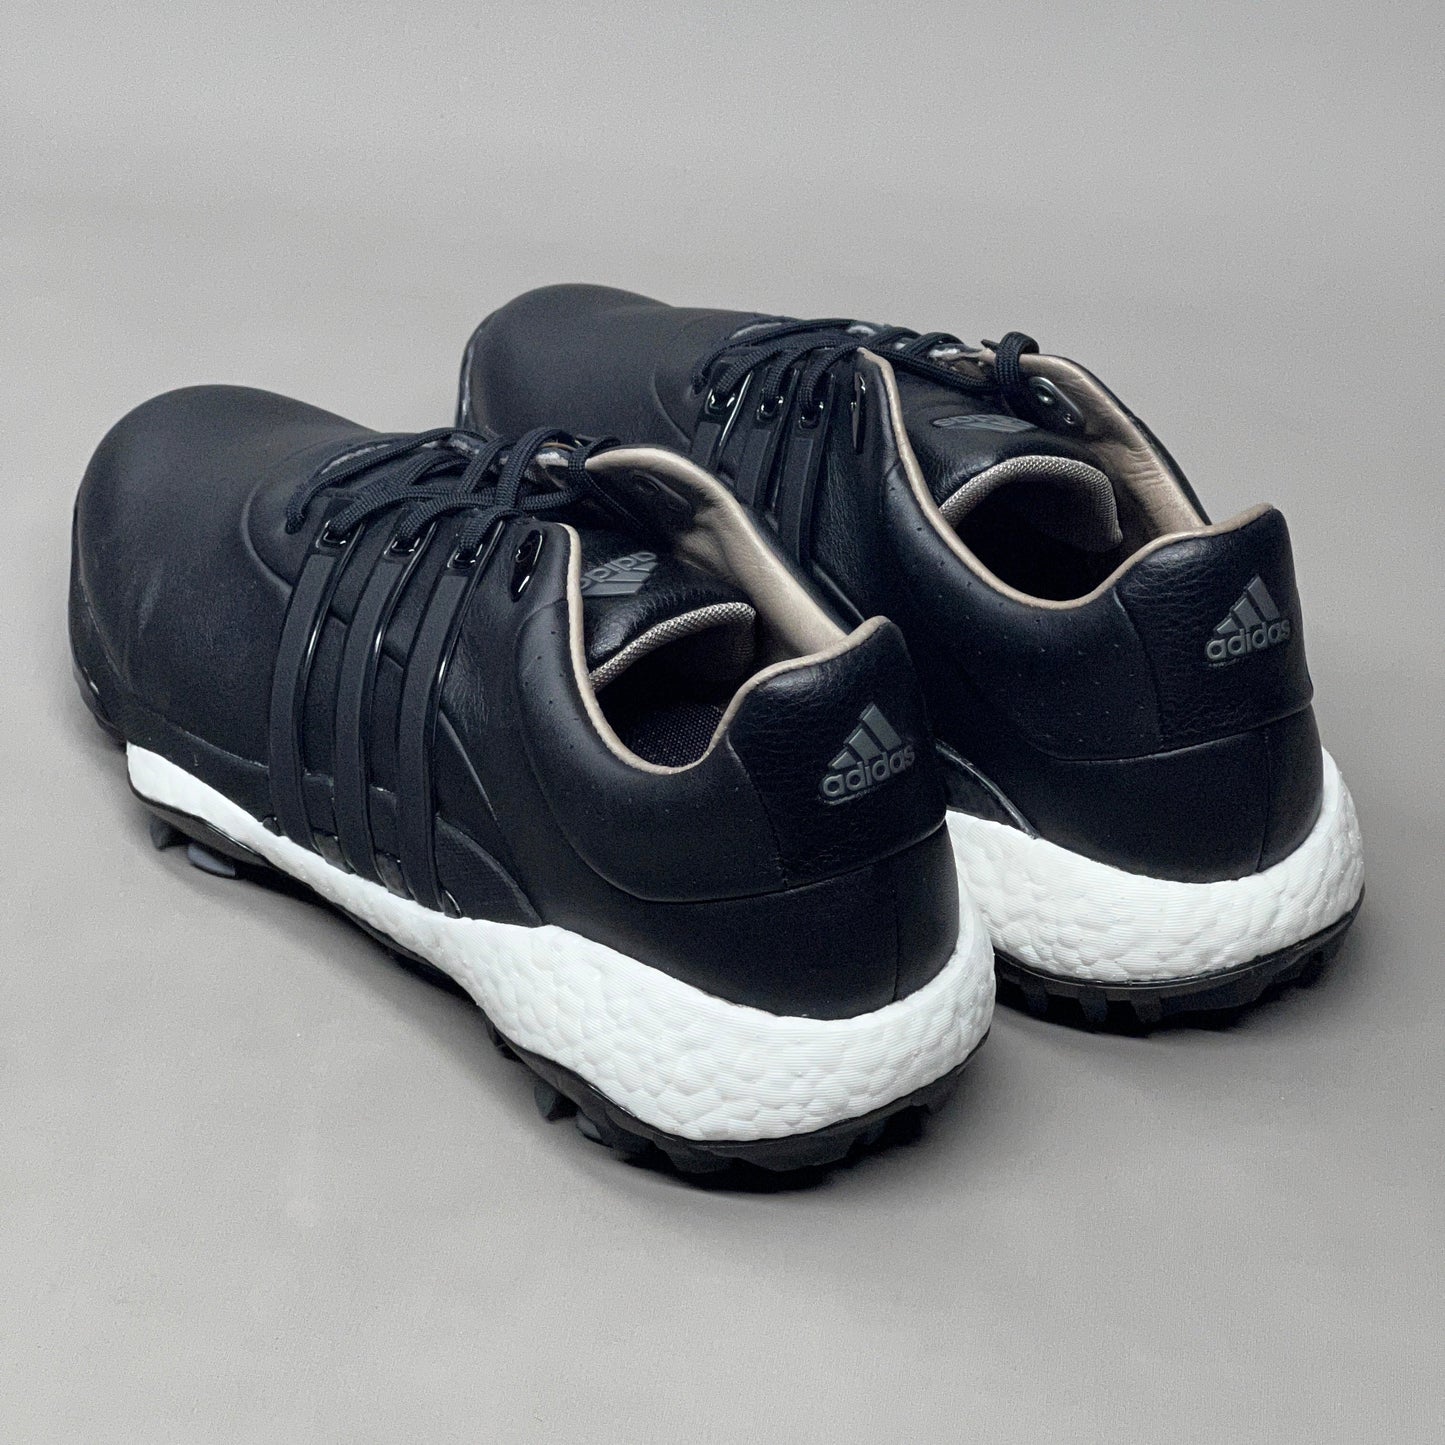 ADIDAS Golf Shoes TOUR360 22 Leather Men's Sz 8 Black / Iron Metallic GZ3158 (New)